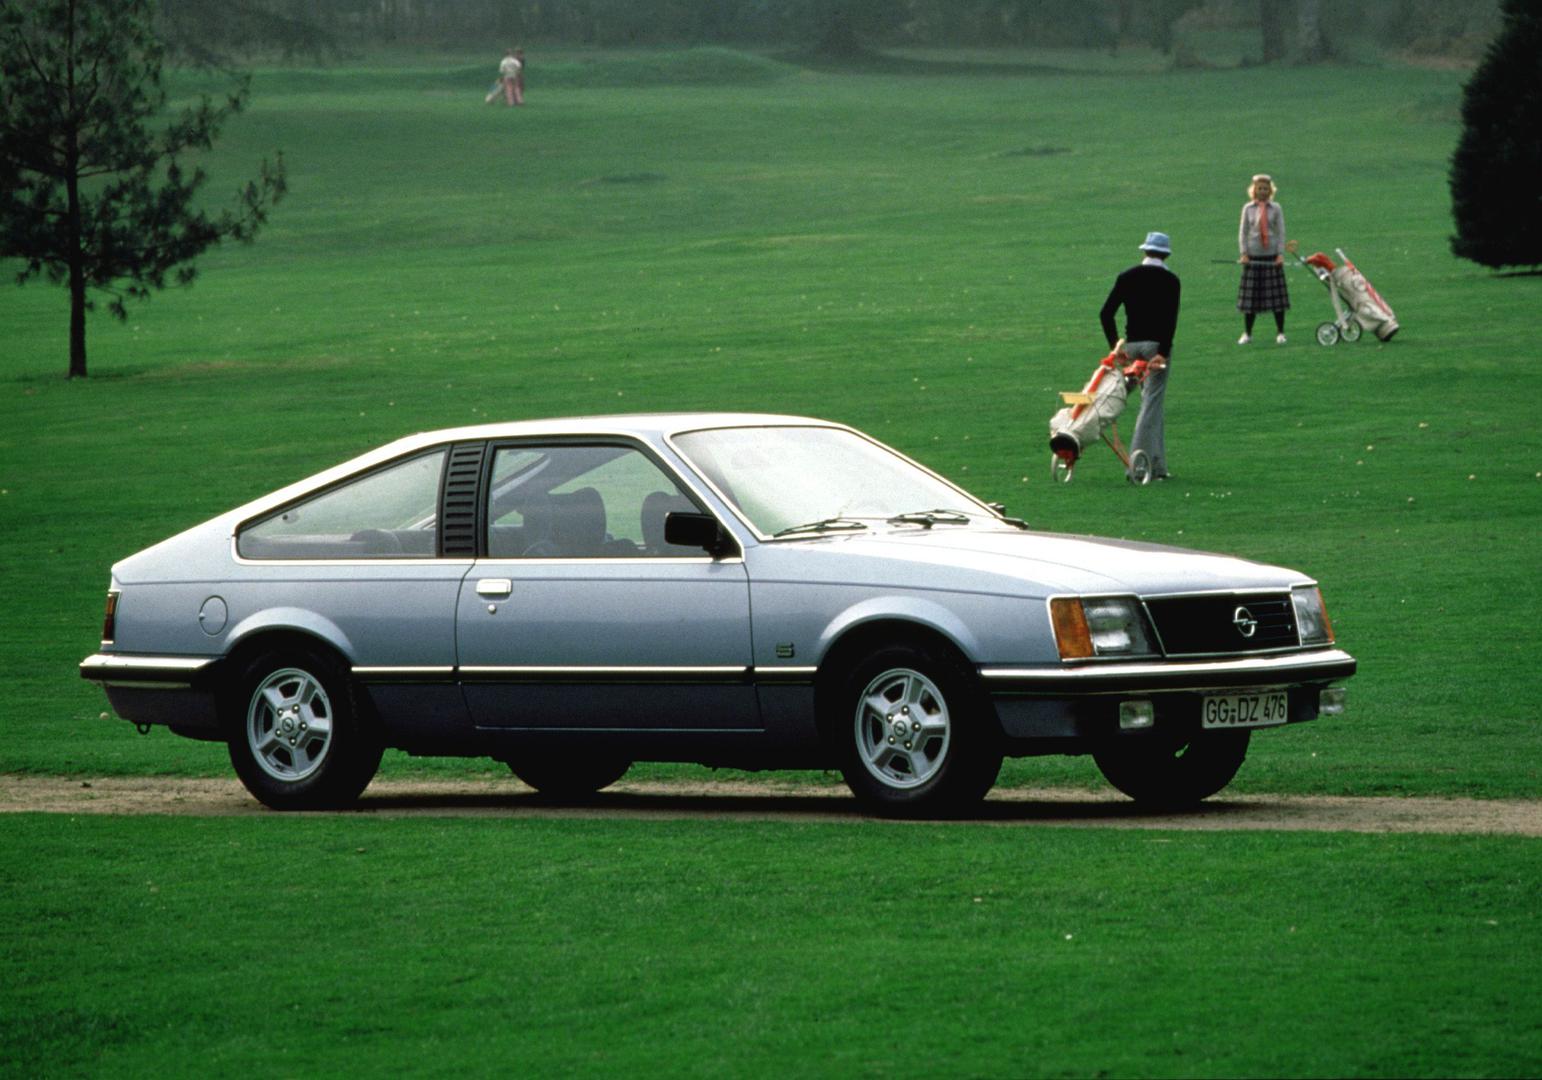 OPEL MONZA Sportski auto iz 1980. u kojem smo najviše uživali, 6-cilindarski benzinac sa 180 KS hvata 216 km/h, a vozi se s lakoćom